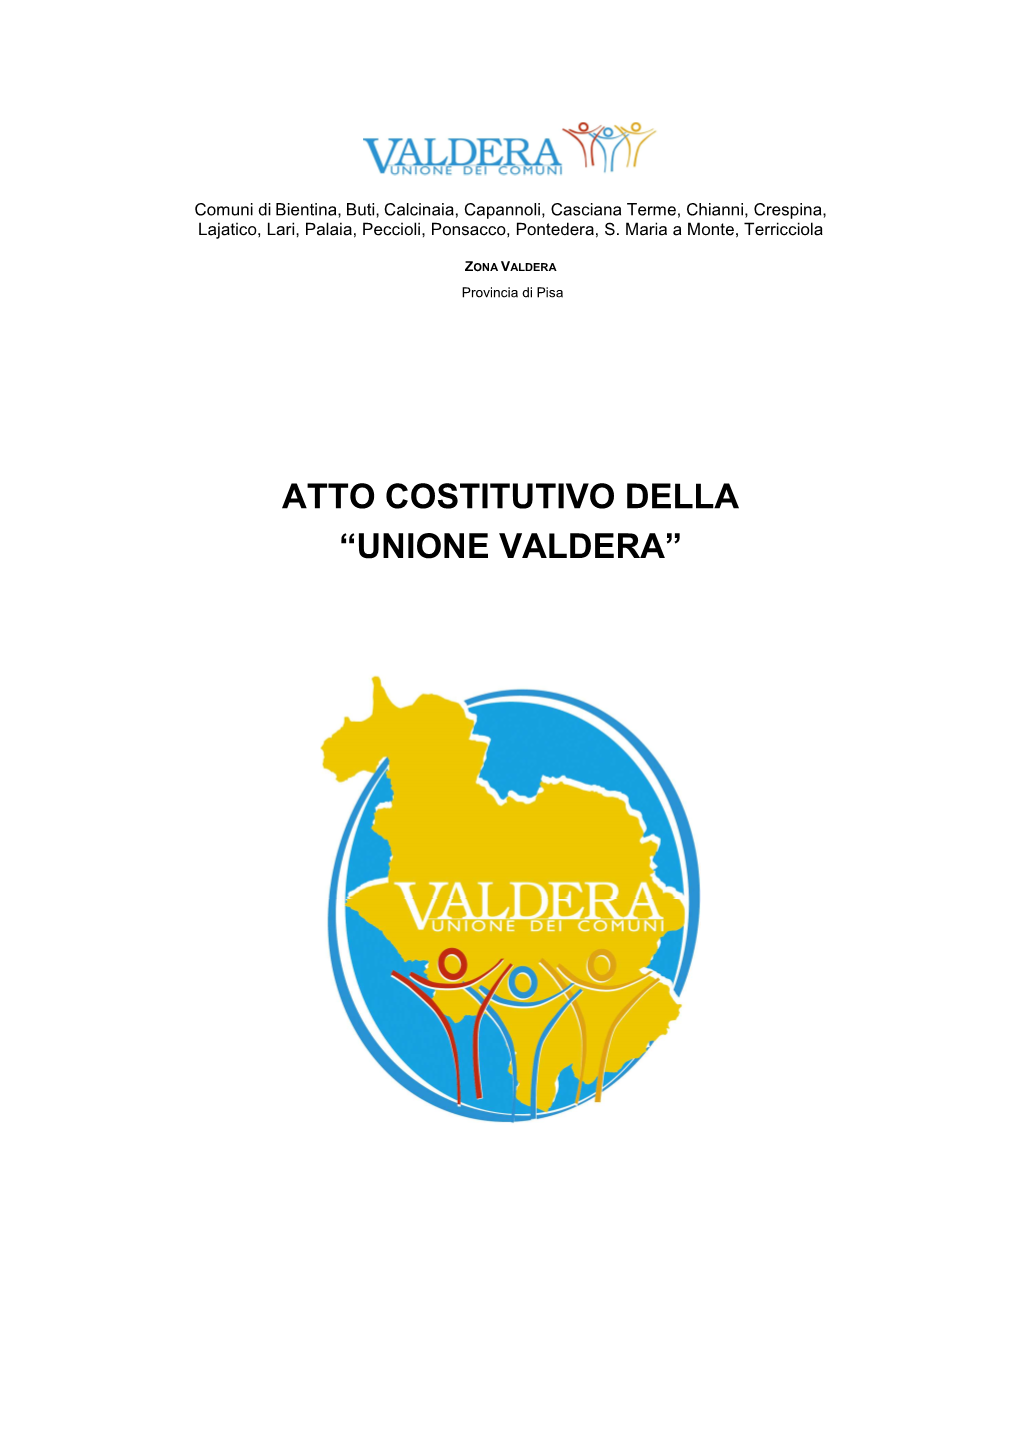 Atto Costitutivo Della “Unione Valdera”